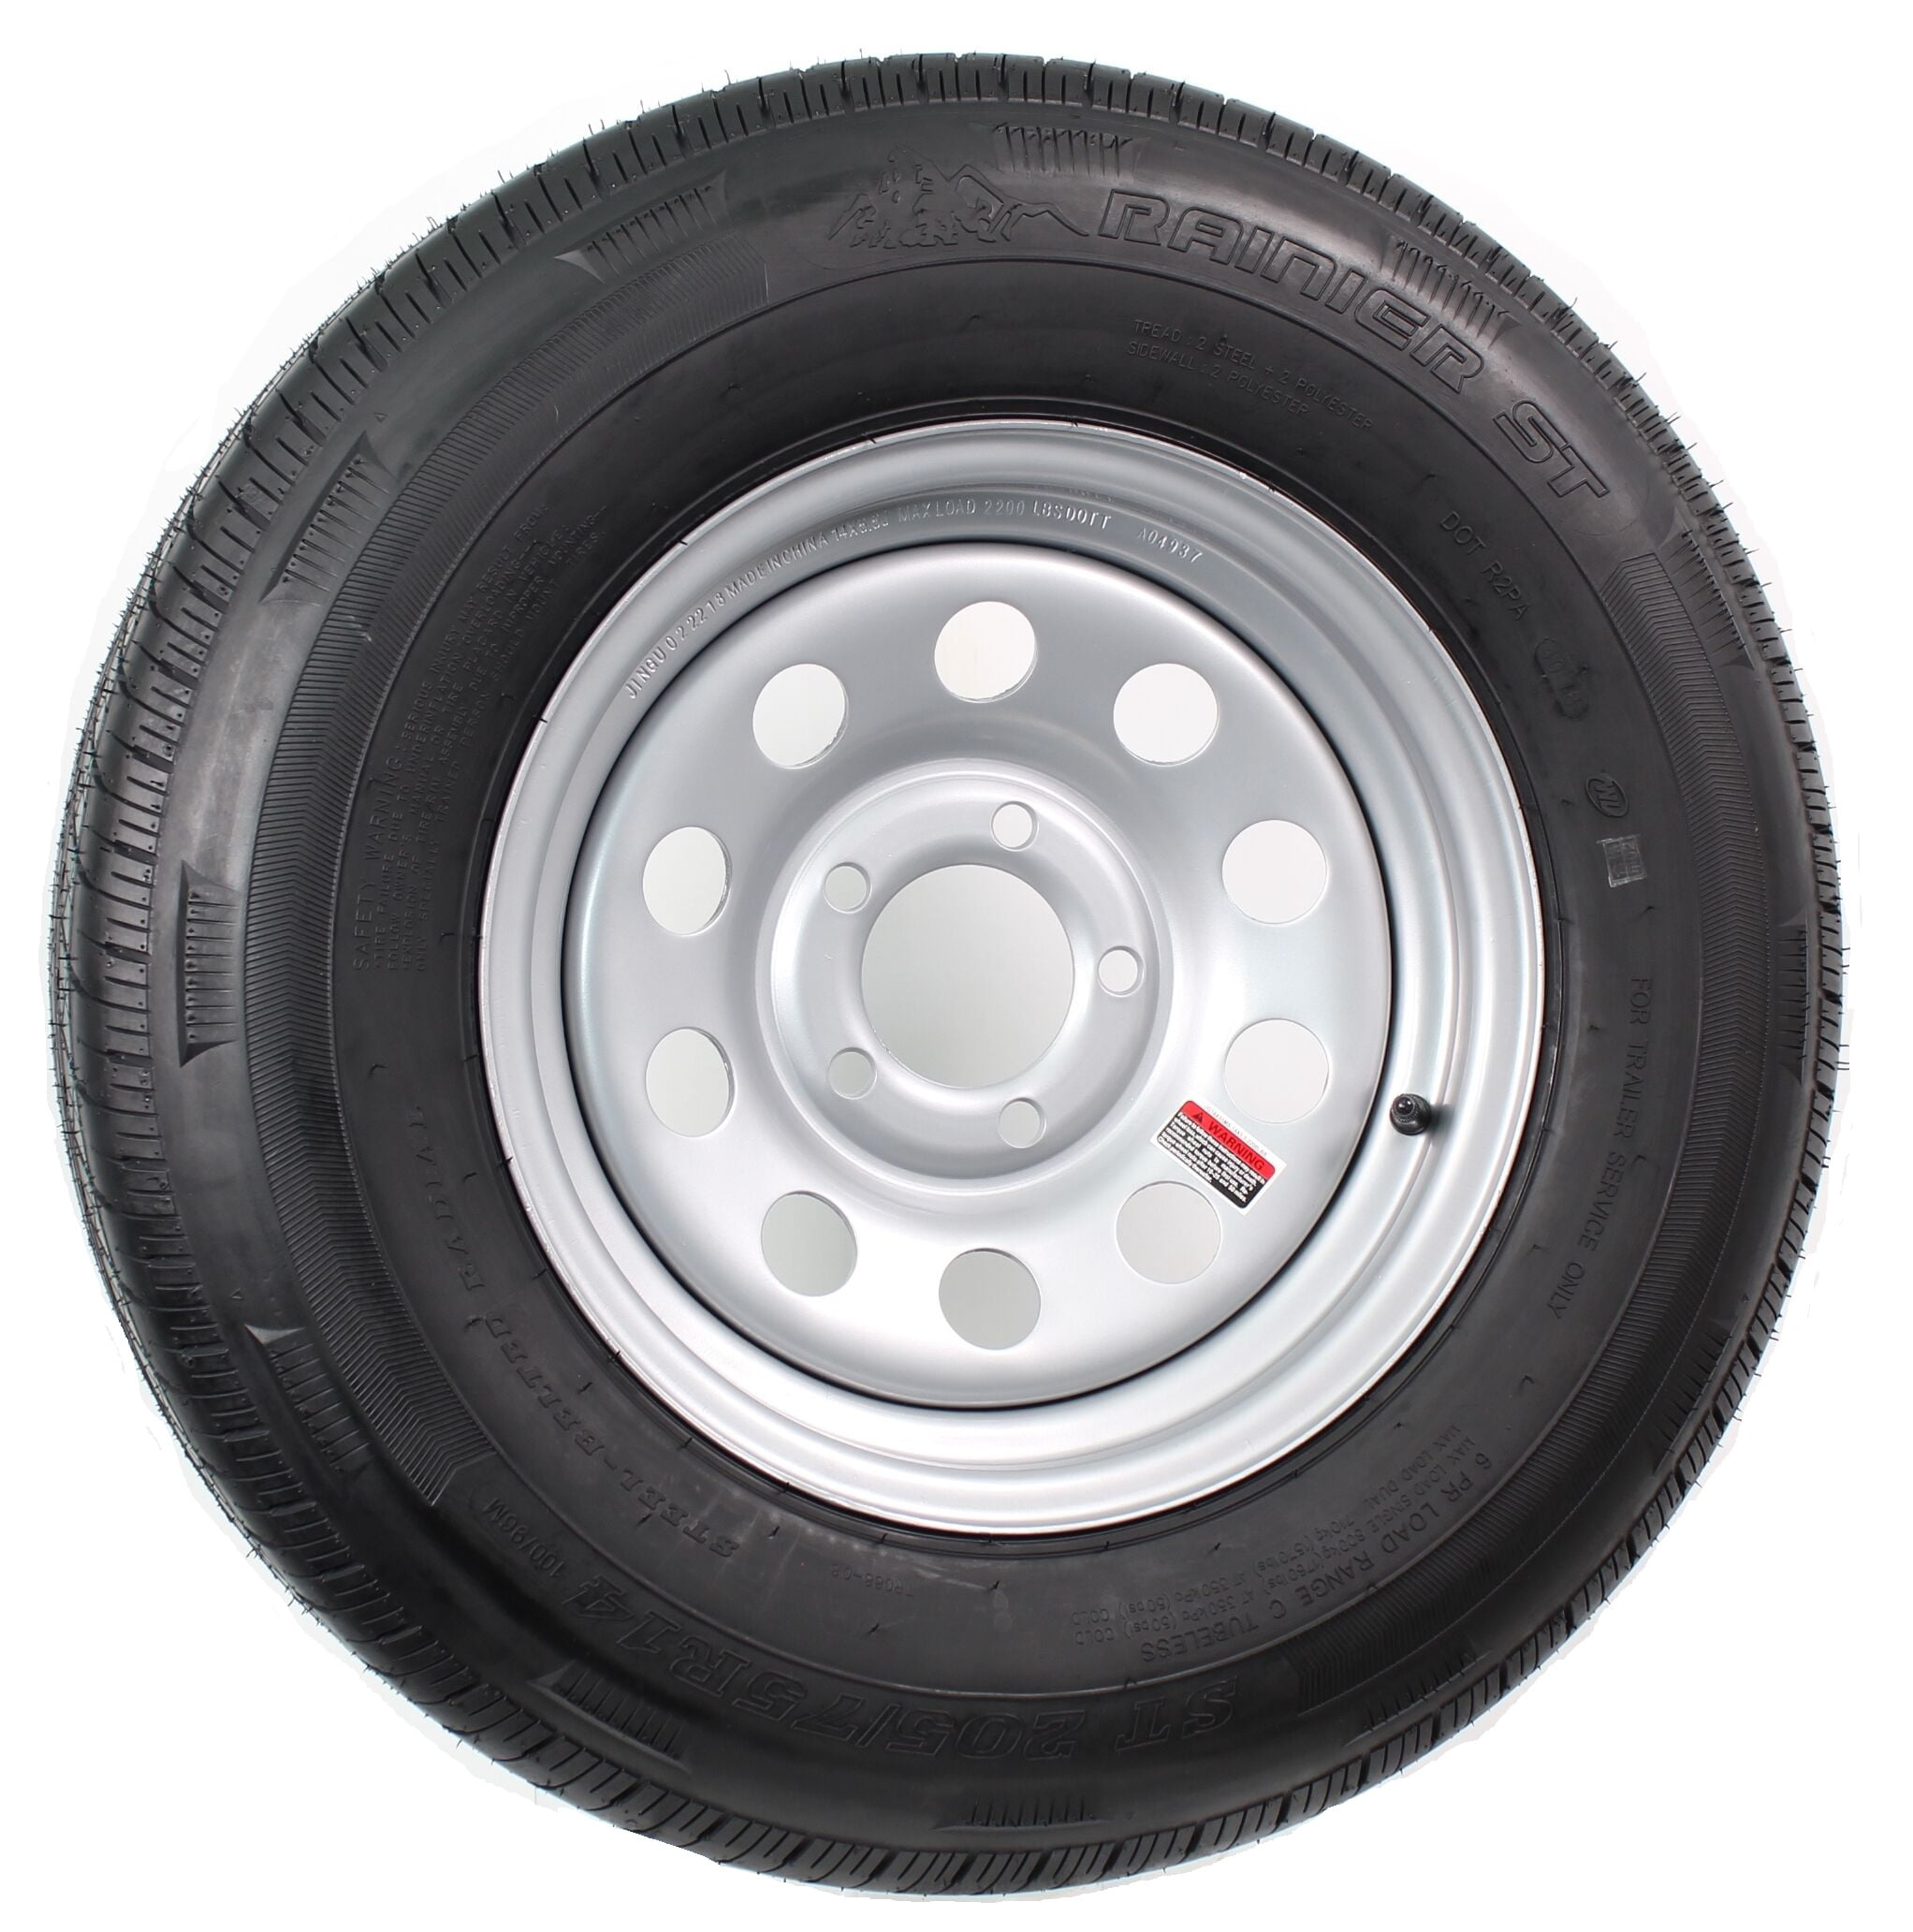 2-Pk Trailer Tire Rim ST205/75D14 14 in Load C 5 Lug Silver Spoke Wheel 